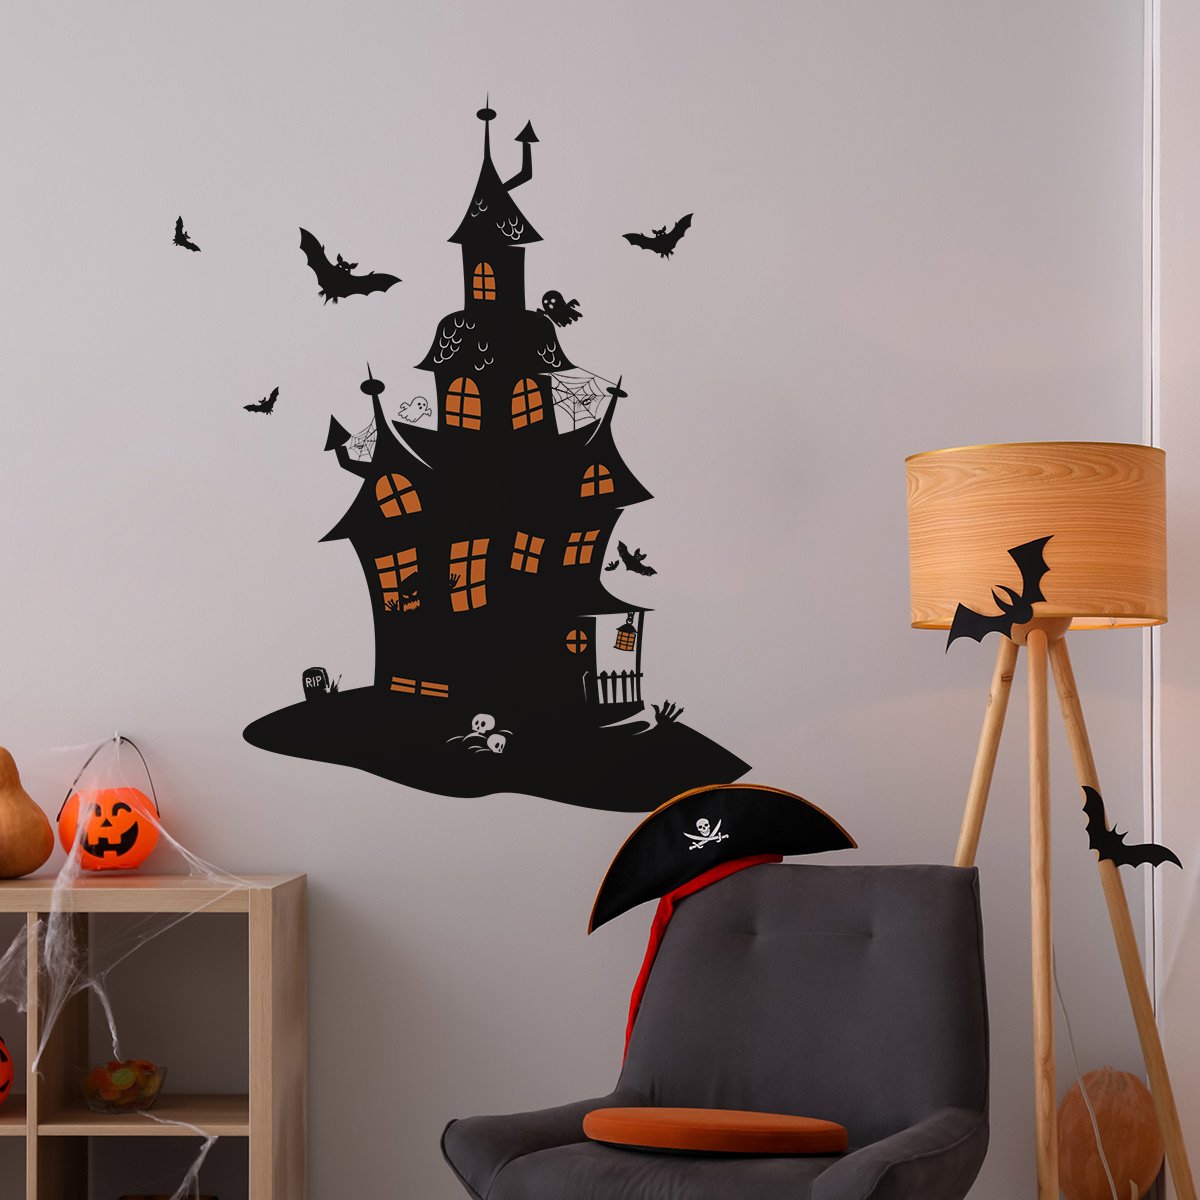 Ideas de decoración en Halloween con vinilo adhesivo